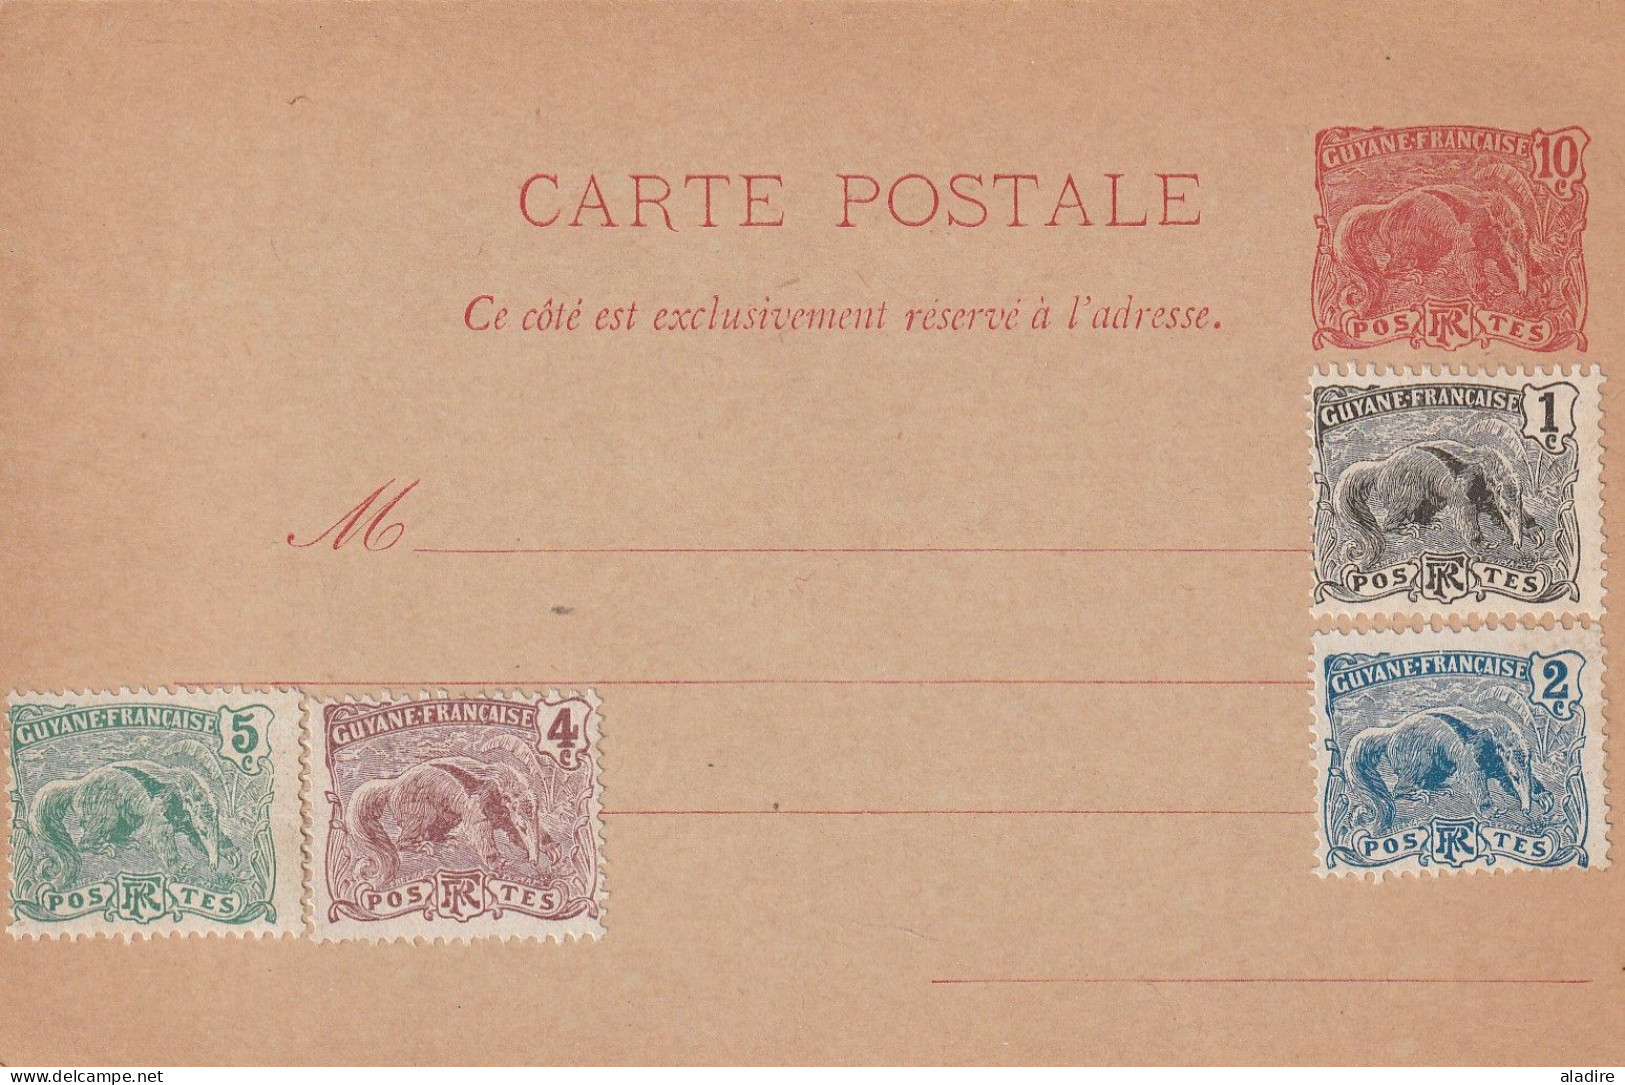 1844 - 1975 - petite collection de 13 lettres, cartes postales, entiers, enveloppes de GUYANE FRANCAISE (17 scans)